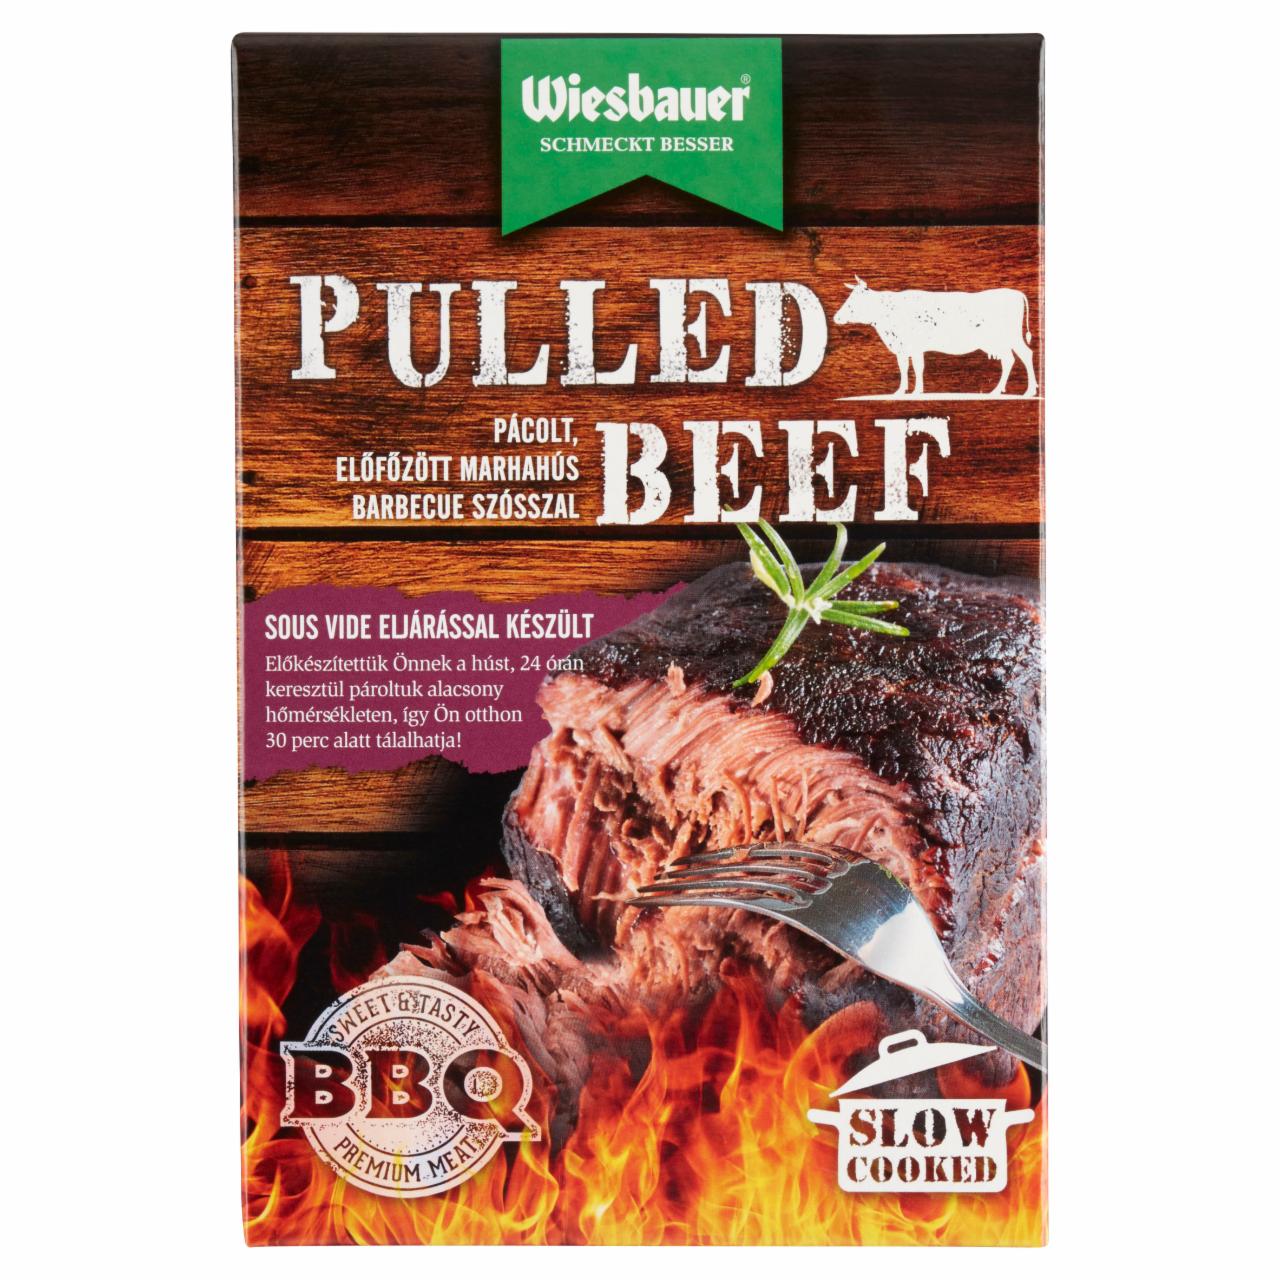 Képek - Wiesbauer Pulled Beef pácolt, előfőzött marhahús barbecue szósszal 400 g